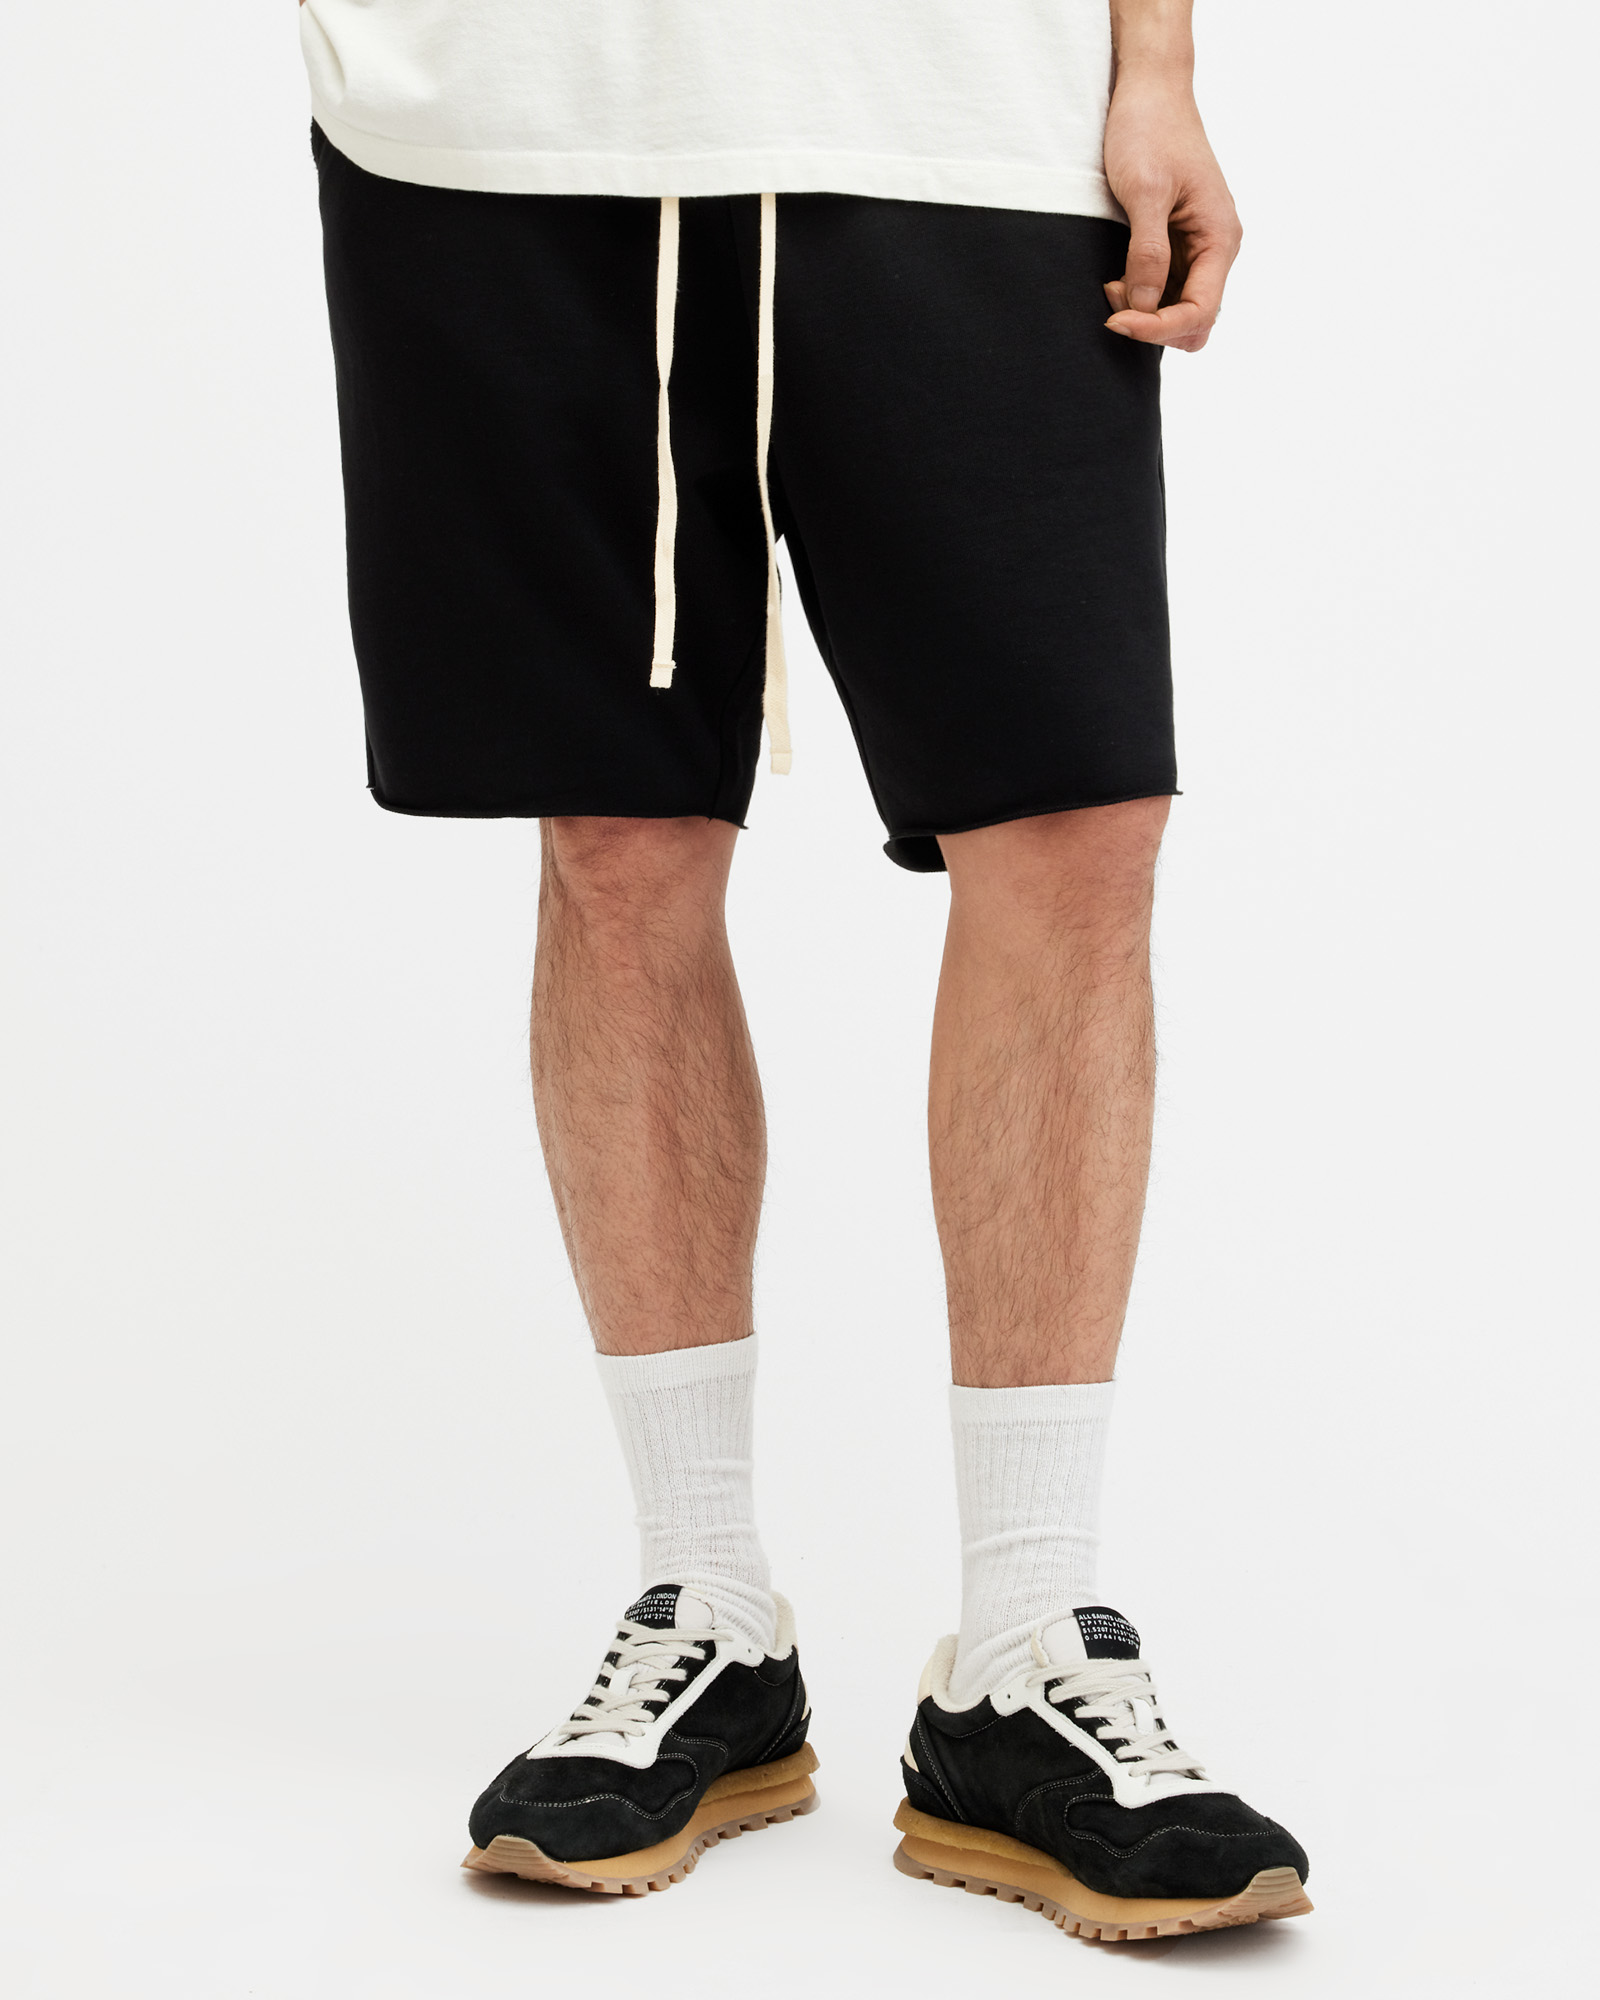 AllSaints Men's Cotton Relaxed Fit Helix Sweat Shorts, Black, Size: XS